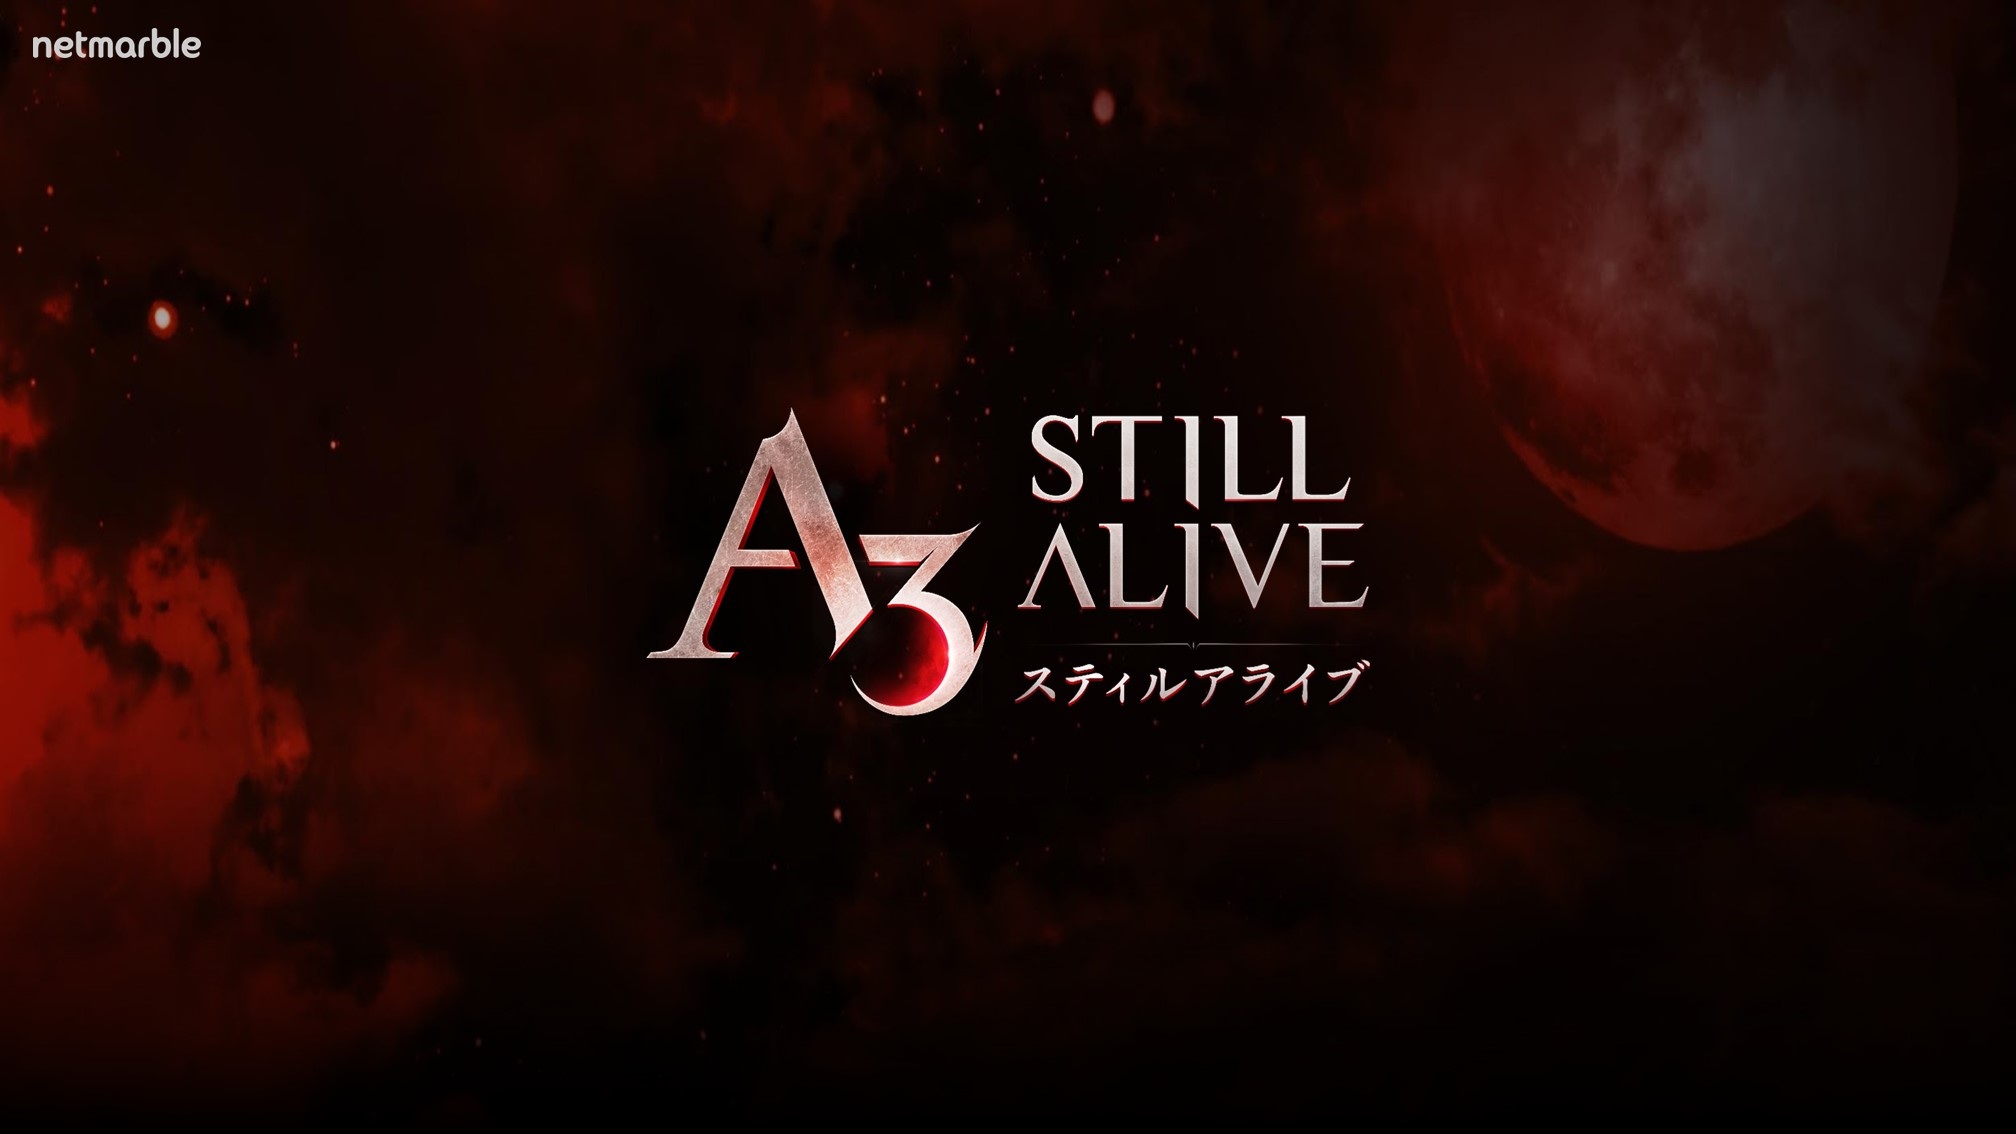 ネットマーブルの新作 A3 Still Alive スティルアライブ はバトロワとmmorpgが融合した新感覚の作品 Game Watch